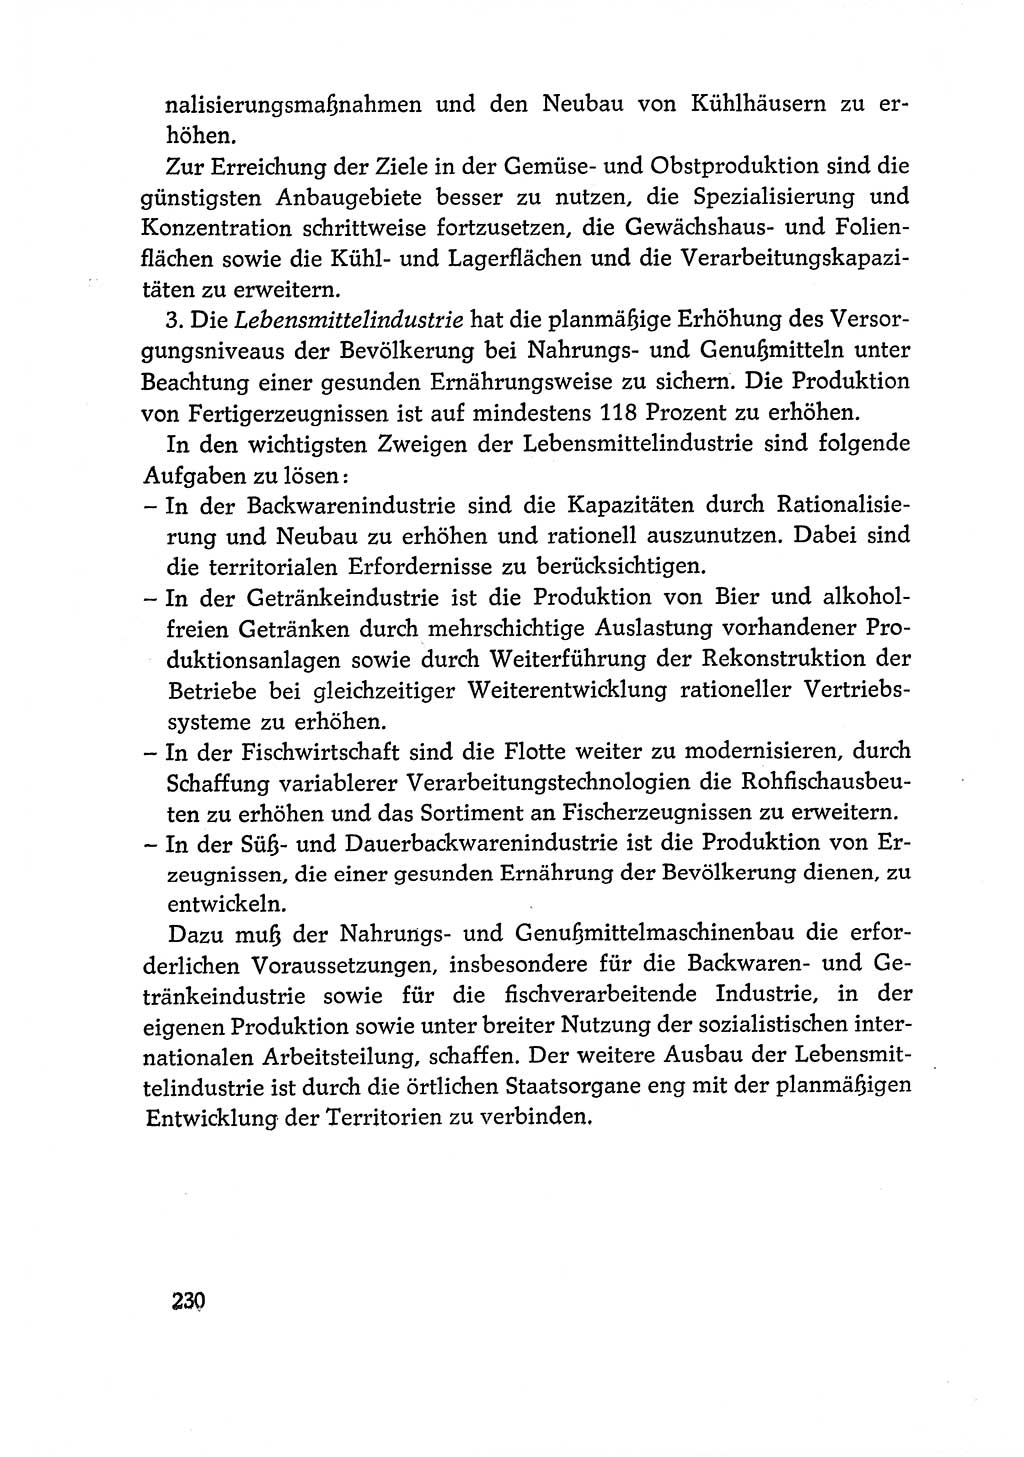 Dokumente der Sozialistischen Einheitspartei Deutschlands (SED) [Deutsche Demokratische Republik (DDR)] 1970-1971, Seite 230 (Dok. SED DDR 1970-1971, S. 230)